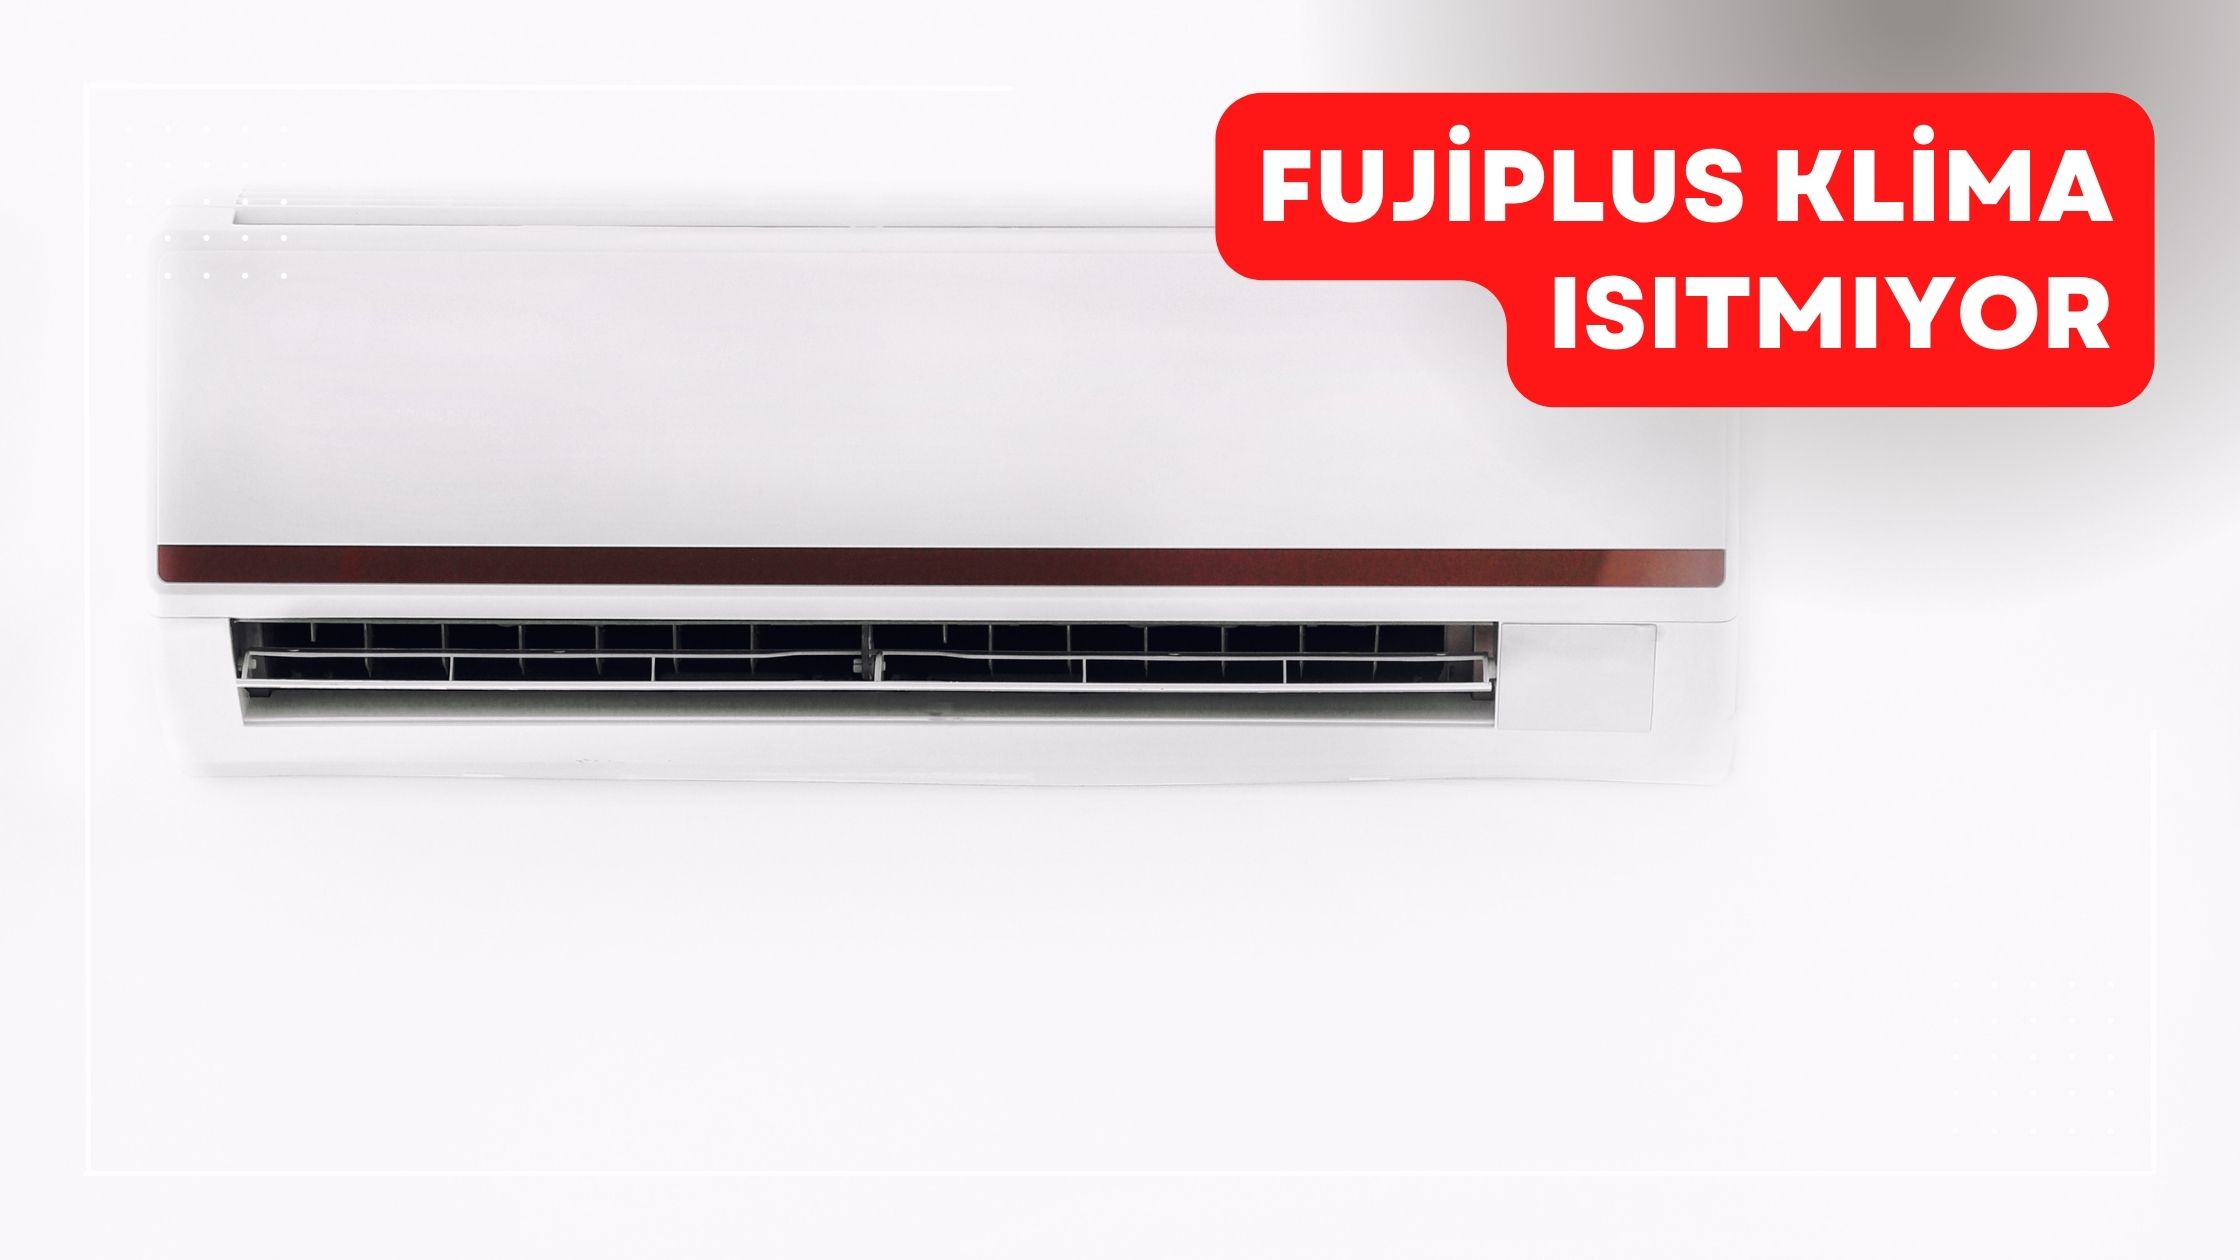 Fujiplus Klima Isıtmıyor